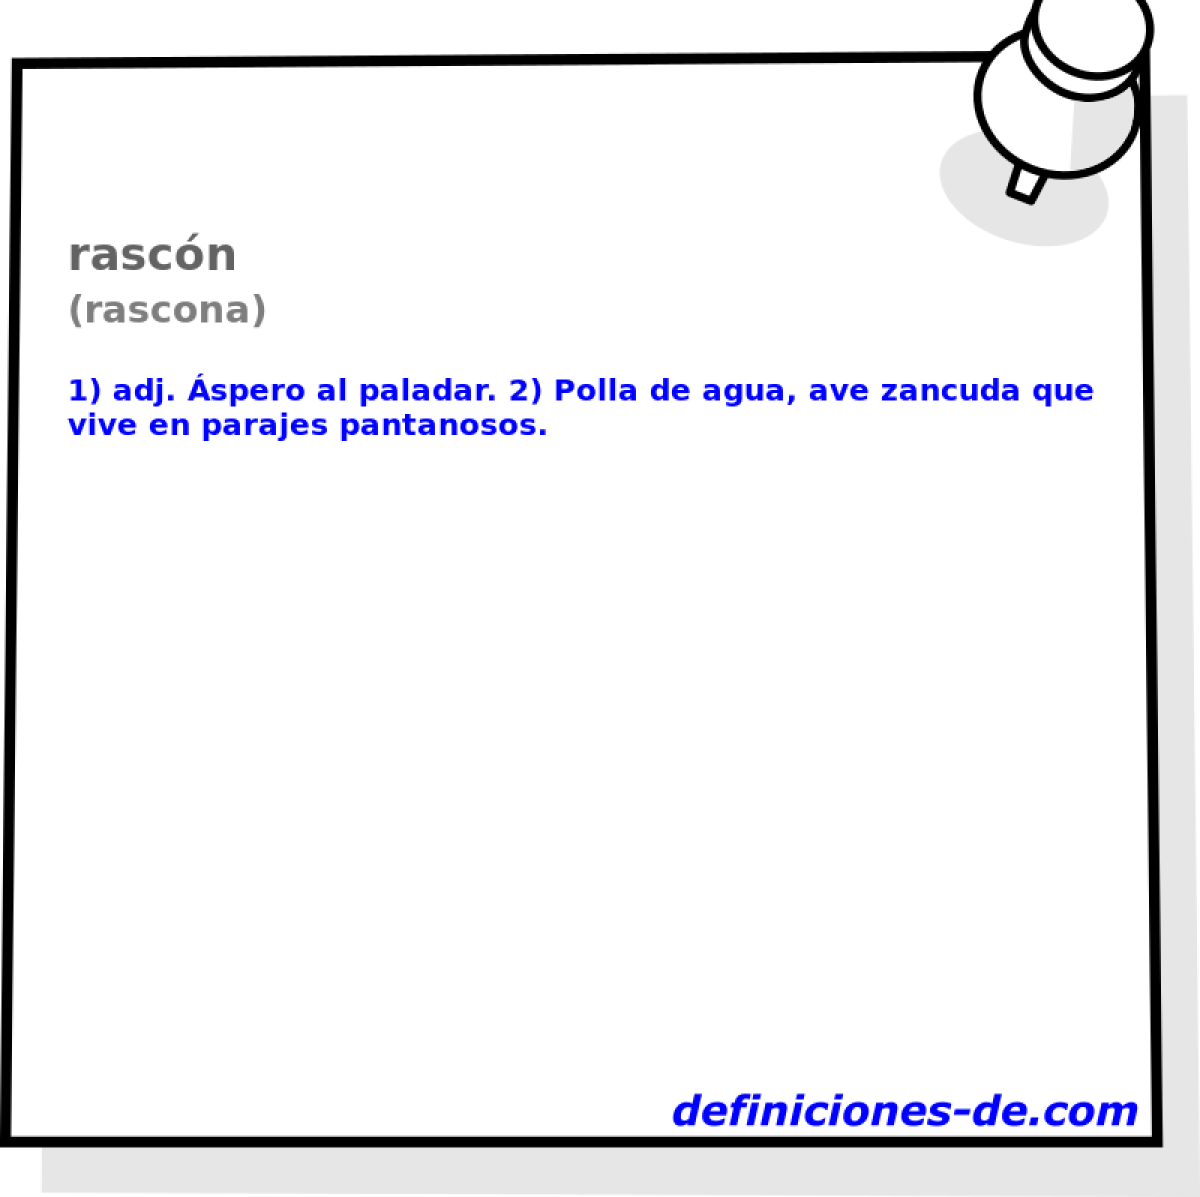 rascn (rascona)